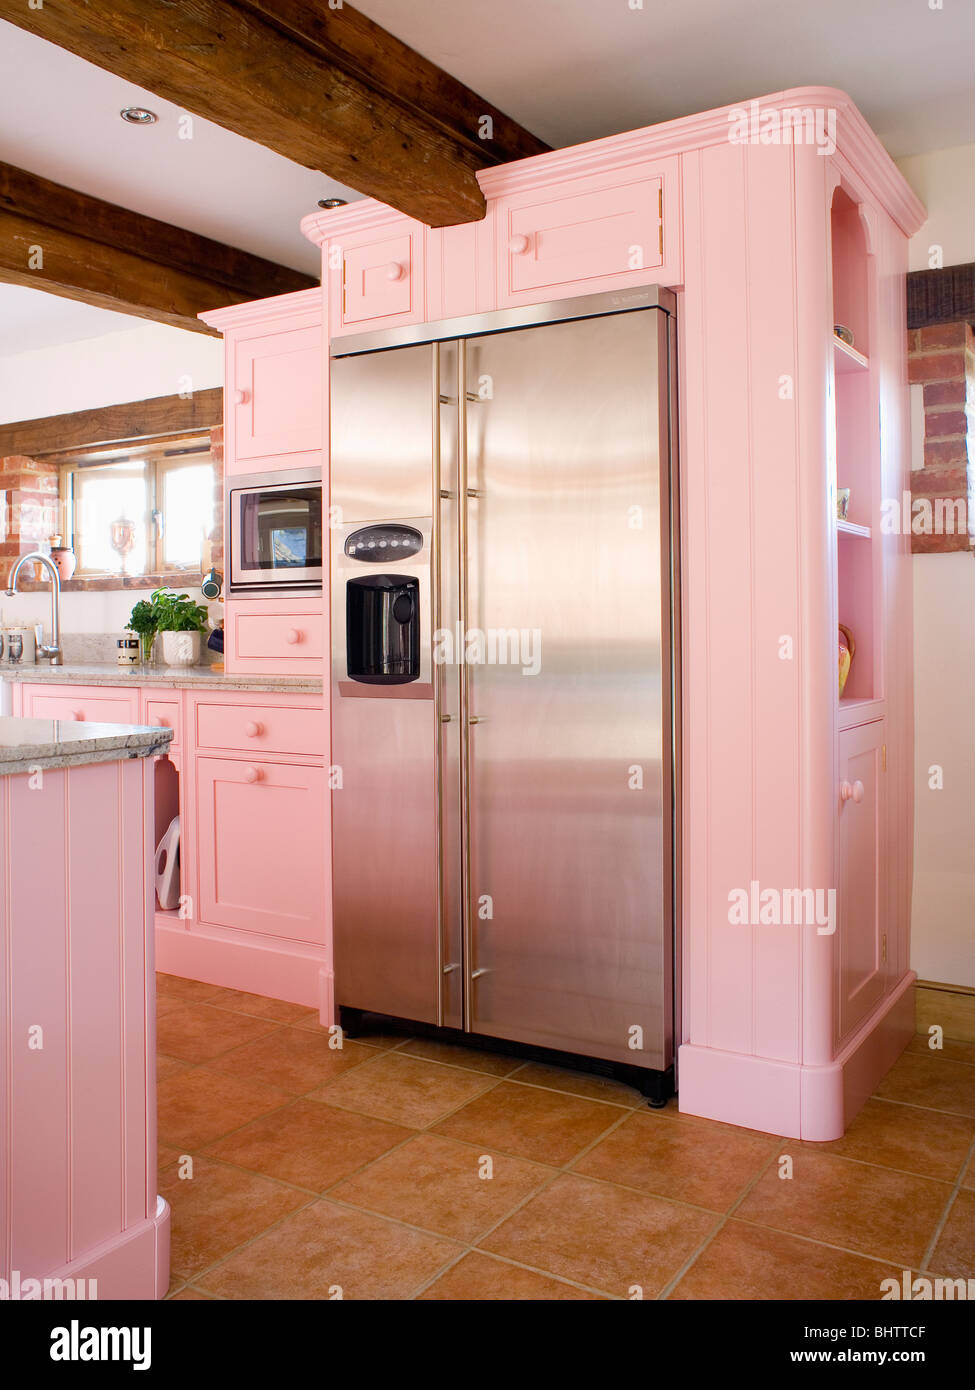 Große Edelstahl amerikanische Kühl-Gefrierkombination in Pastell rosa  ausgestattet Einheit im Landhaus-Küche Stockfotografie - Alamy